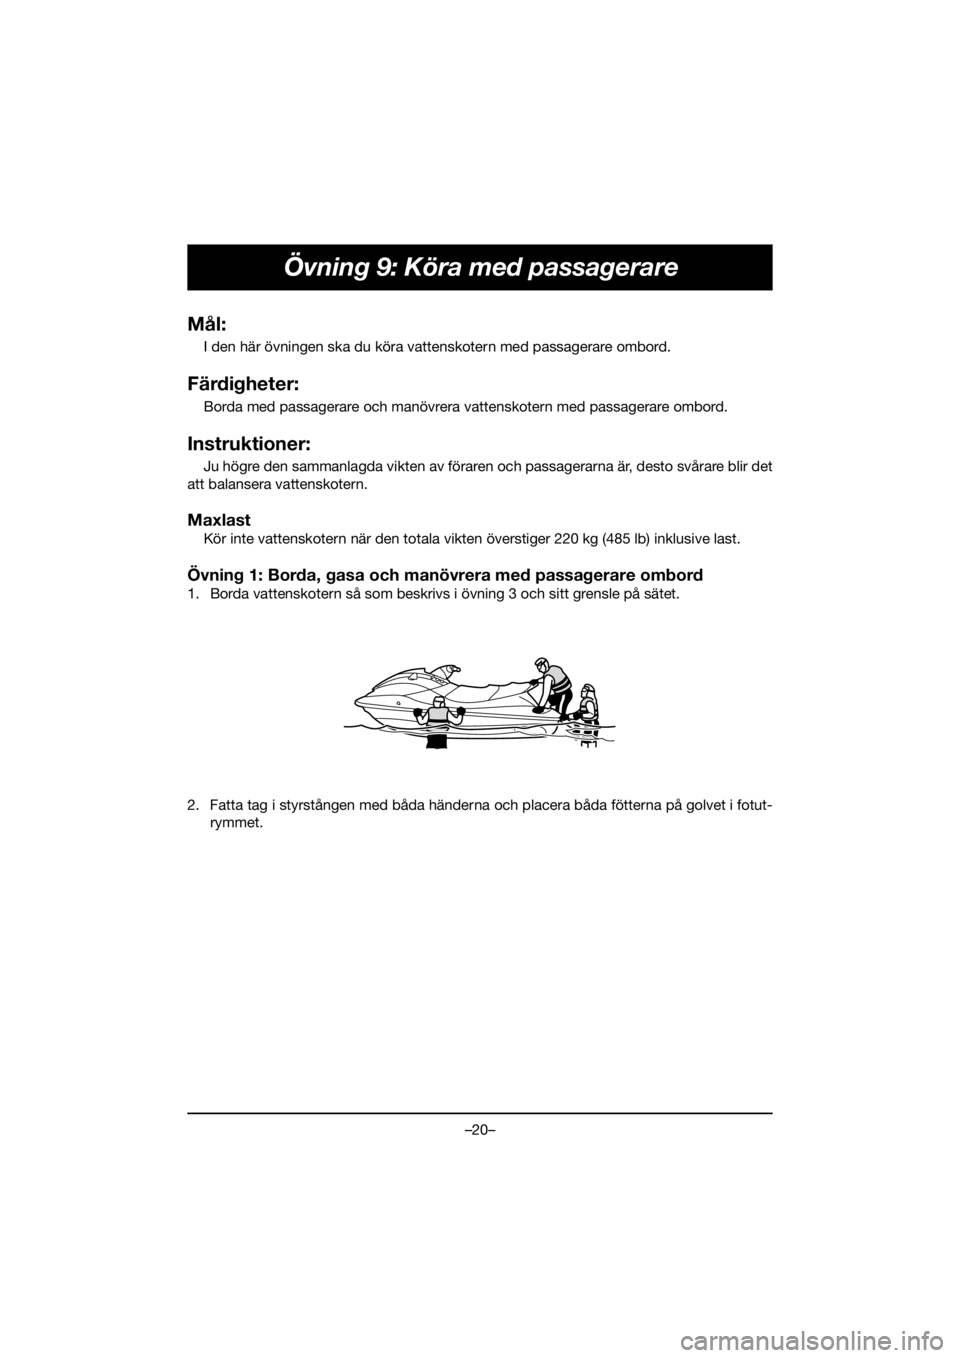 YAMAHA FJR1300 2019  Notices Demploi (in French) –20–
Övning 9: Köra med passagerare
Mål:
I den här övningen ska du köra vattenskotern med passagerare ombord.
Färdigheter:
Borda med passagerare och manövrera vattenskotern med passagerare